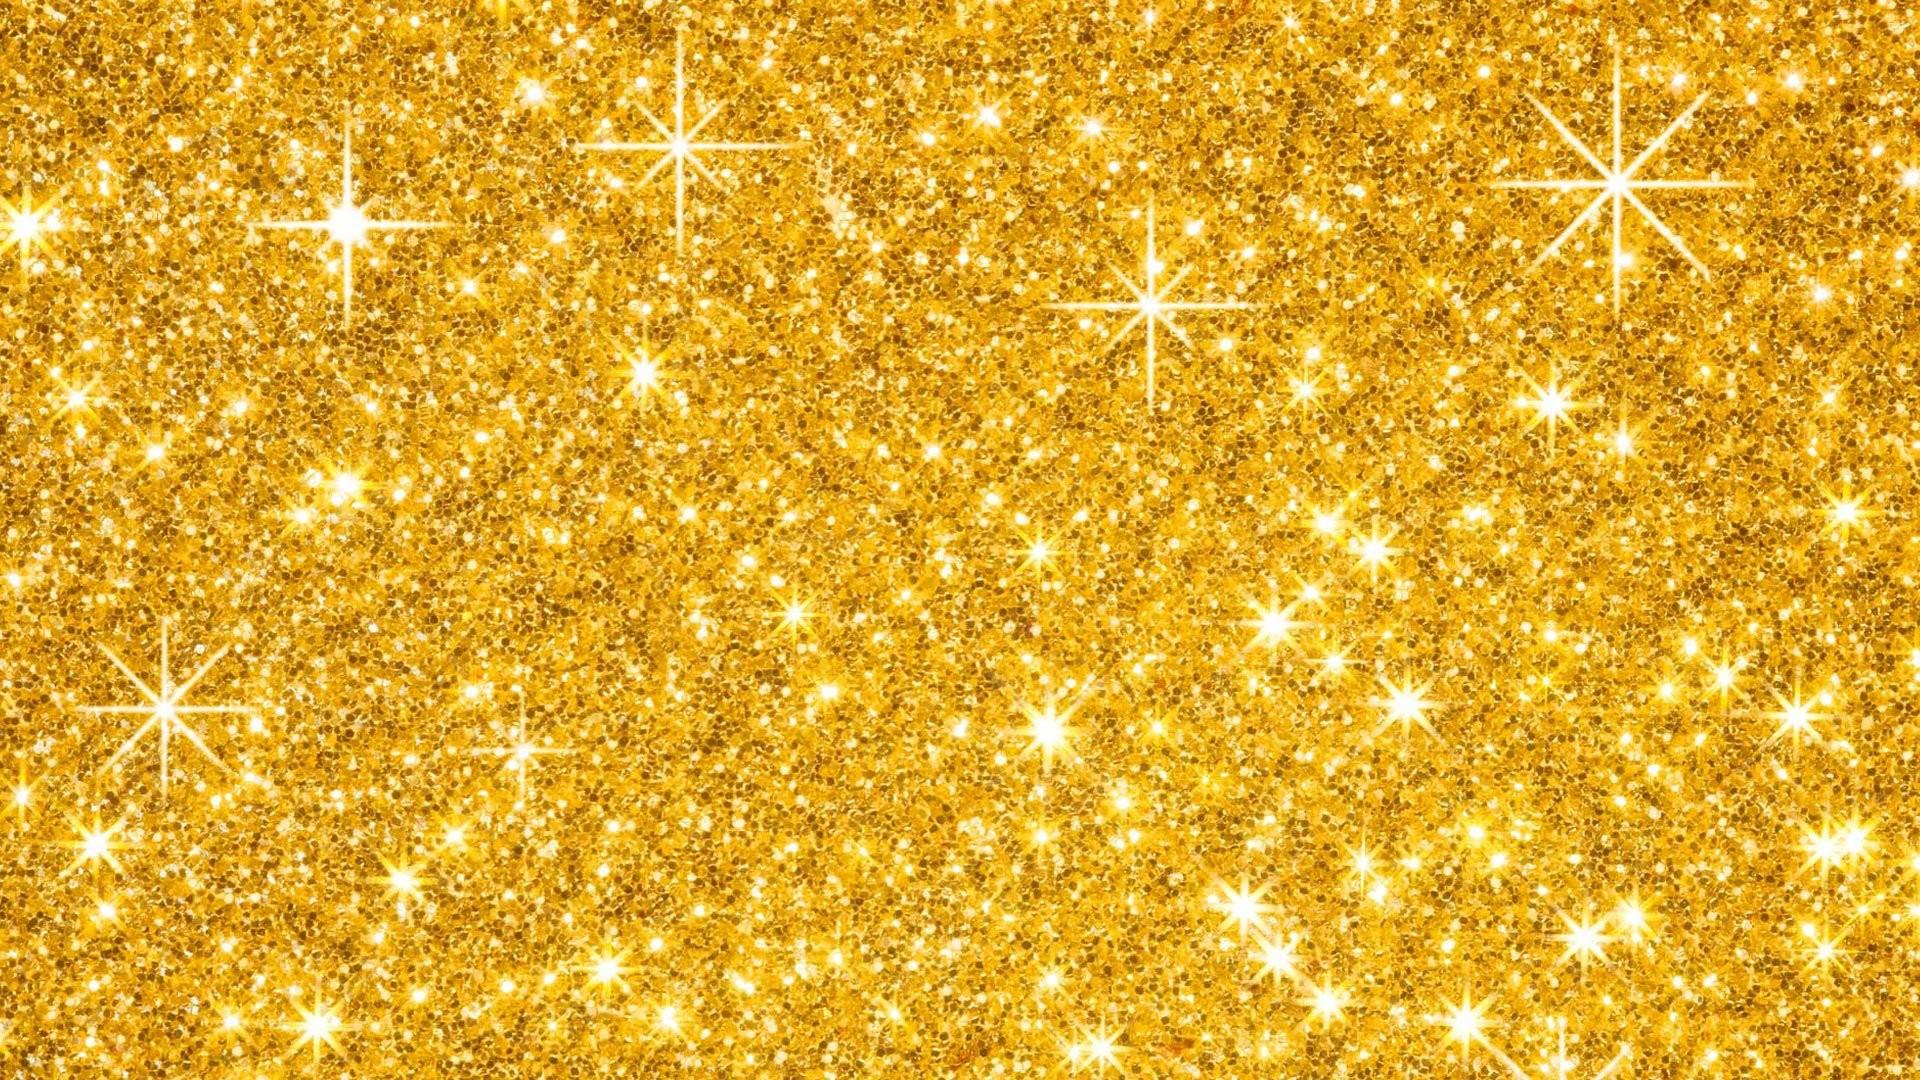 100+ Background Glitter Gold cho thiết kế đẹp và lộng lẫy